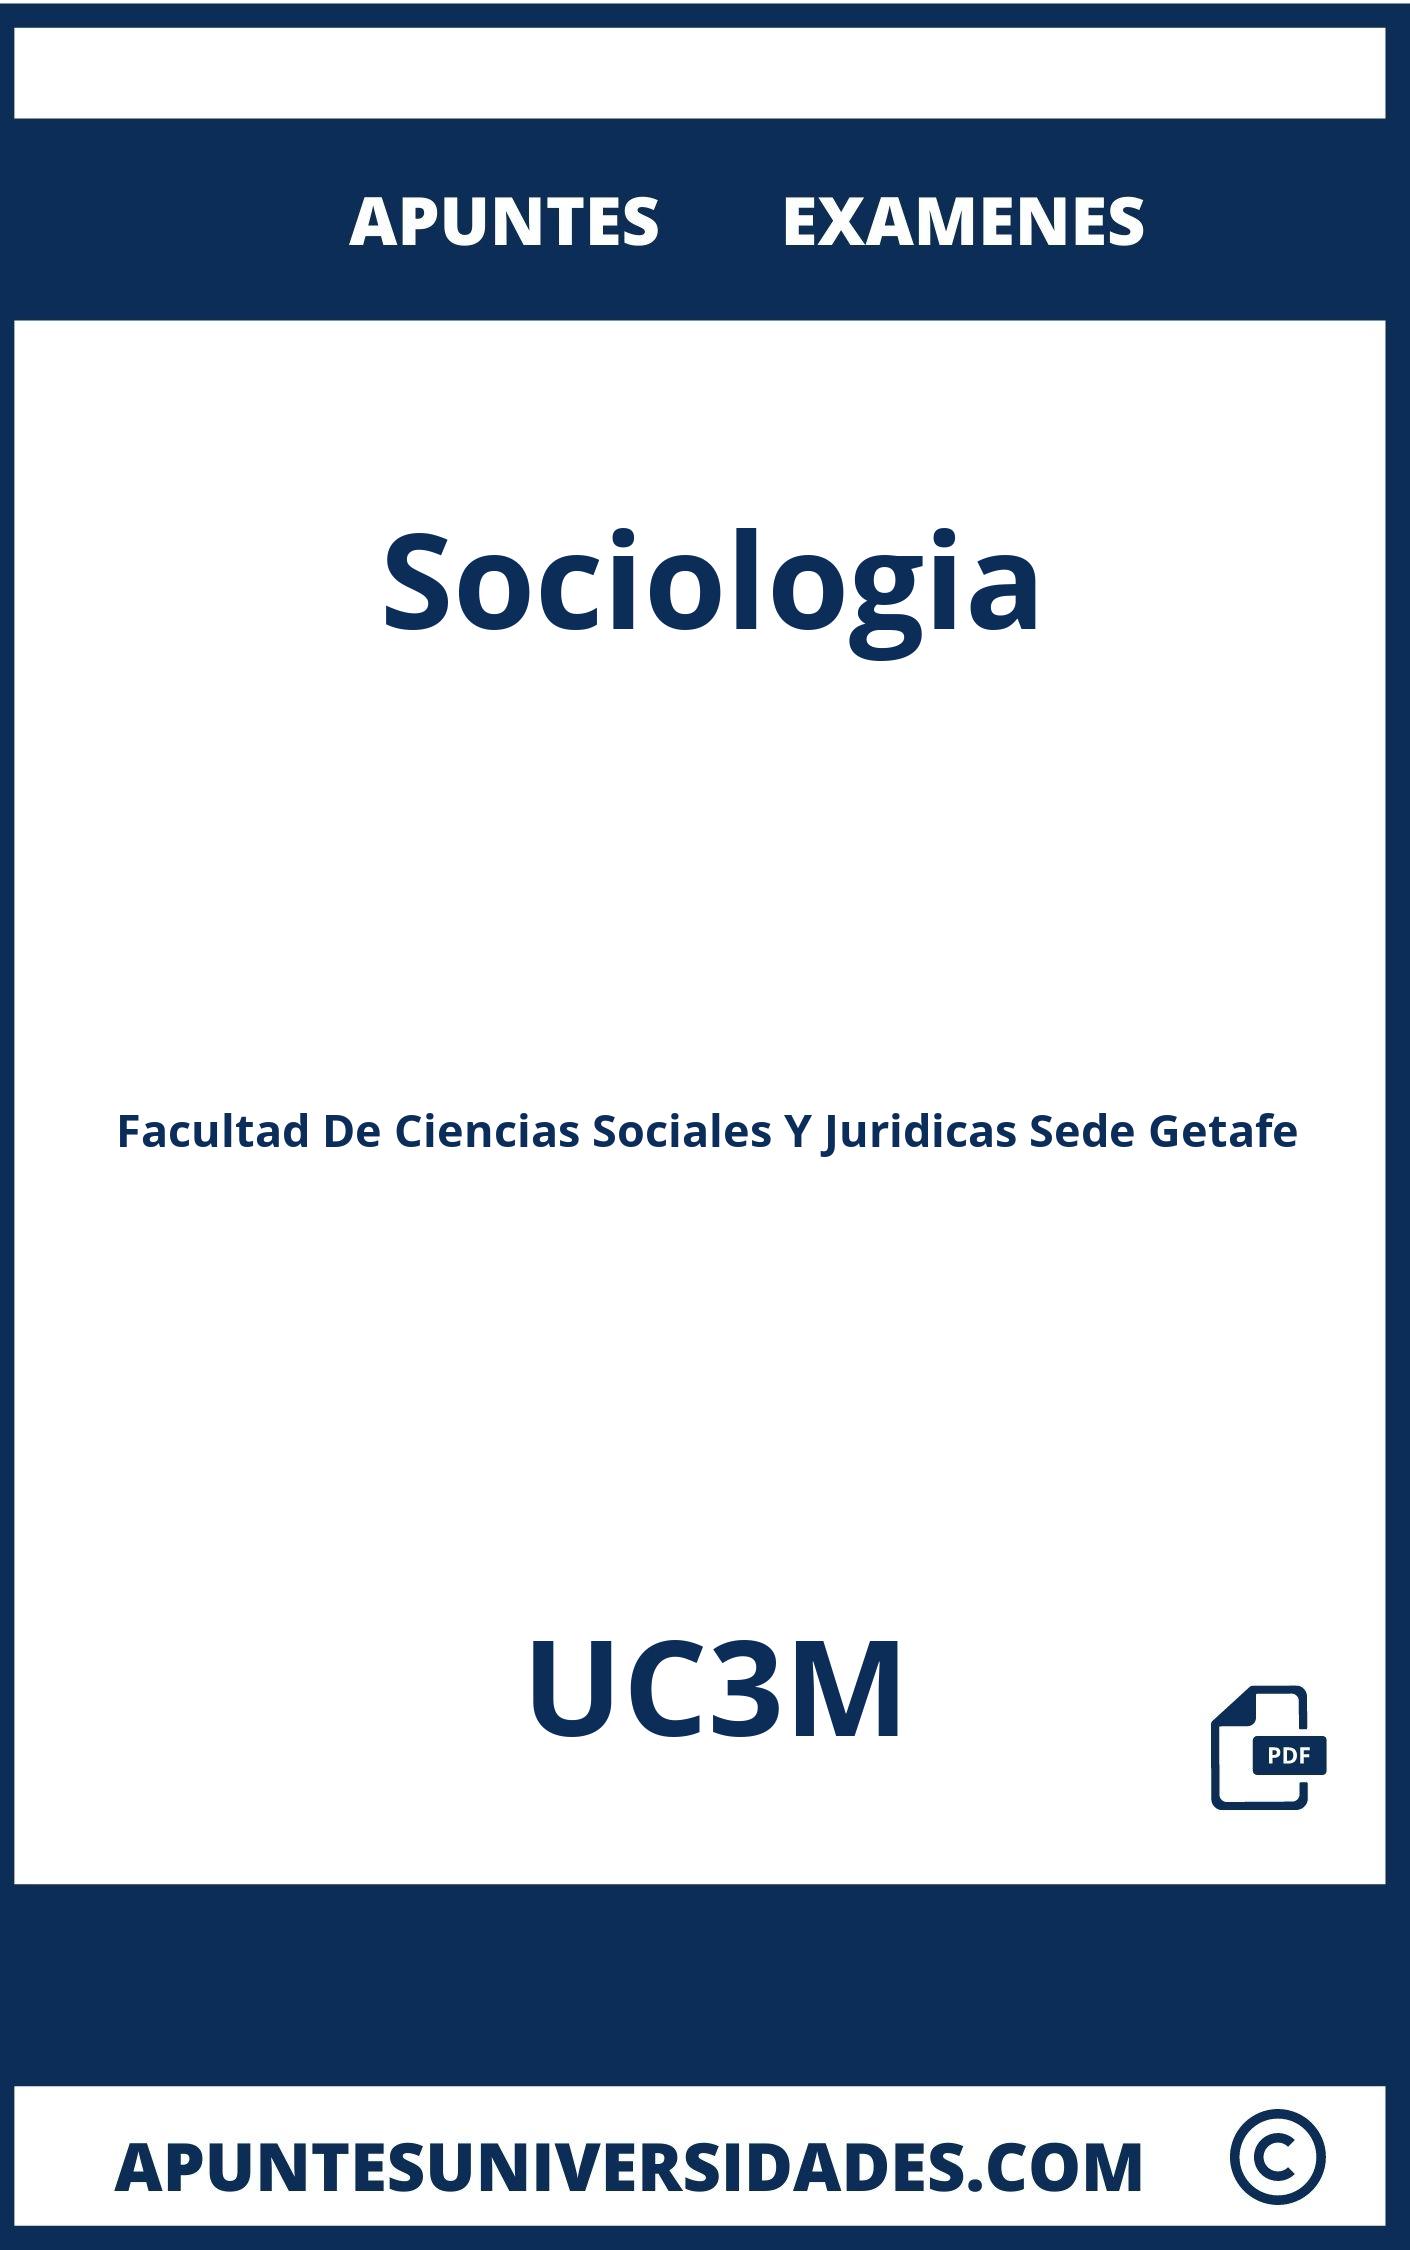 Examenes Sociologia UC3M y Apuntes